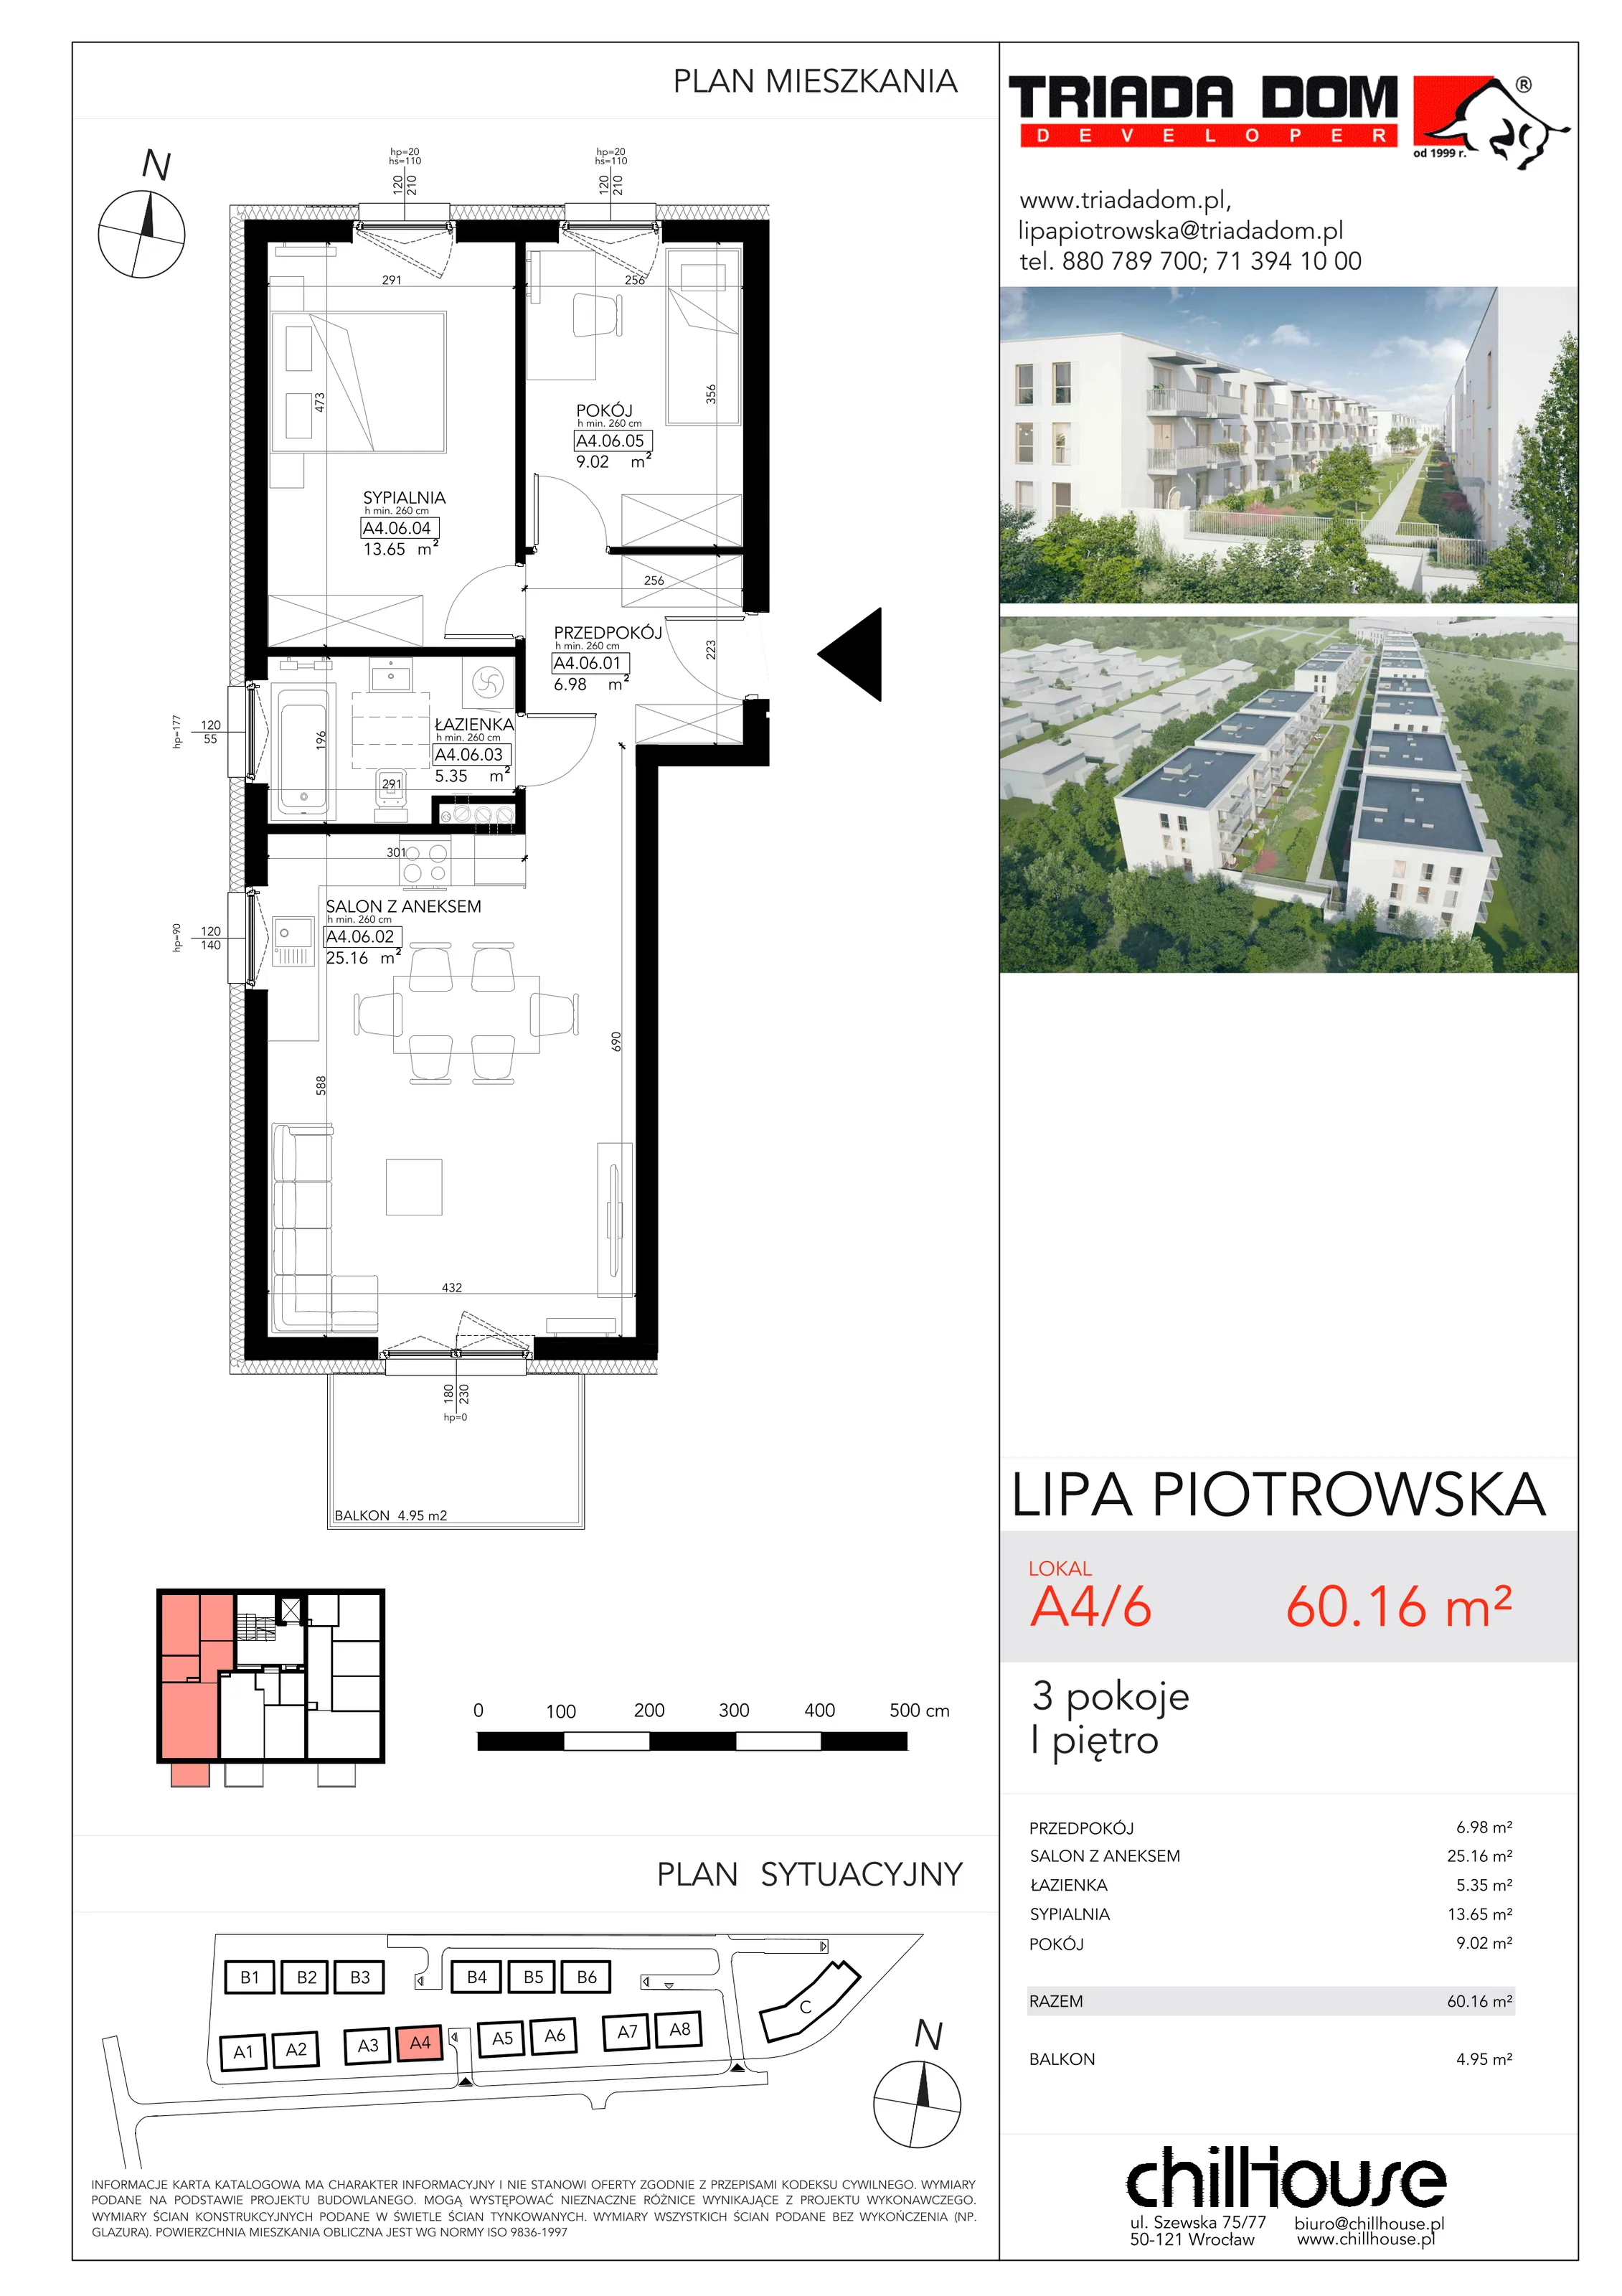 Mieszkanie 60,16 m², piętro 1, oferta nr A46, Lipa Piotrowska, Wrocław, Lipa Piotrowska, ul. Lawendowa / Melisowa